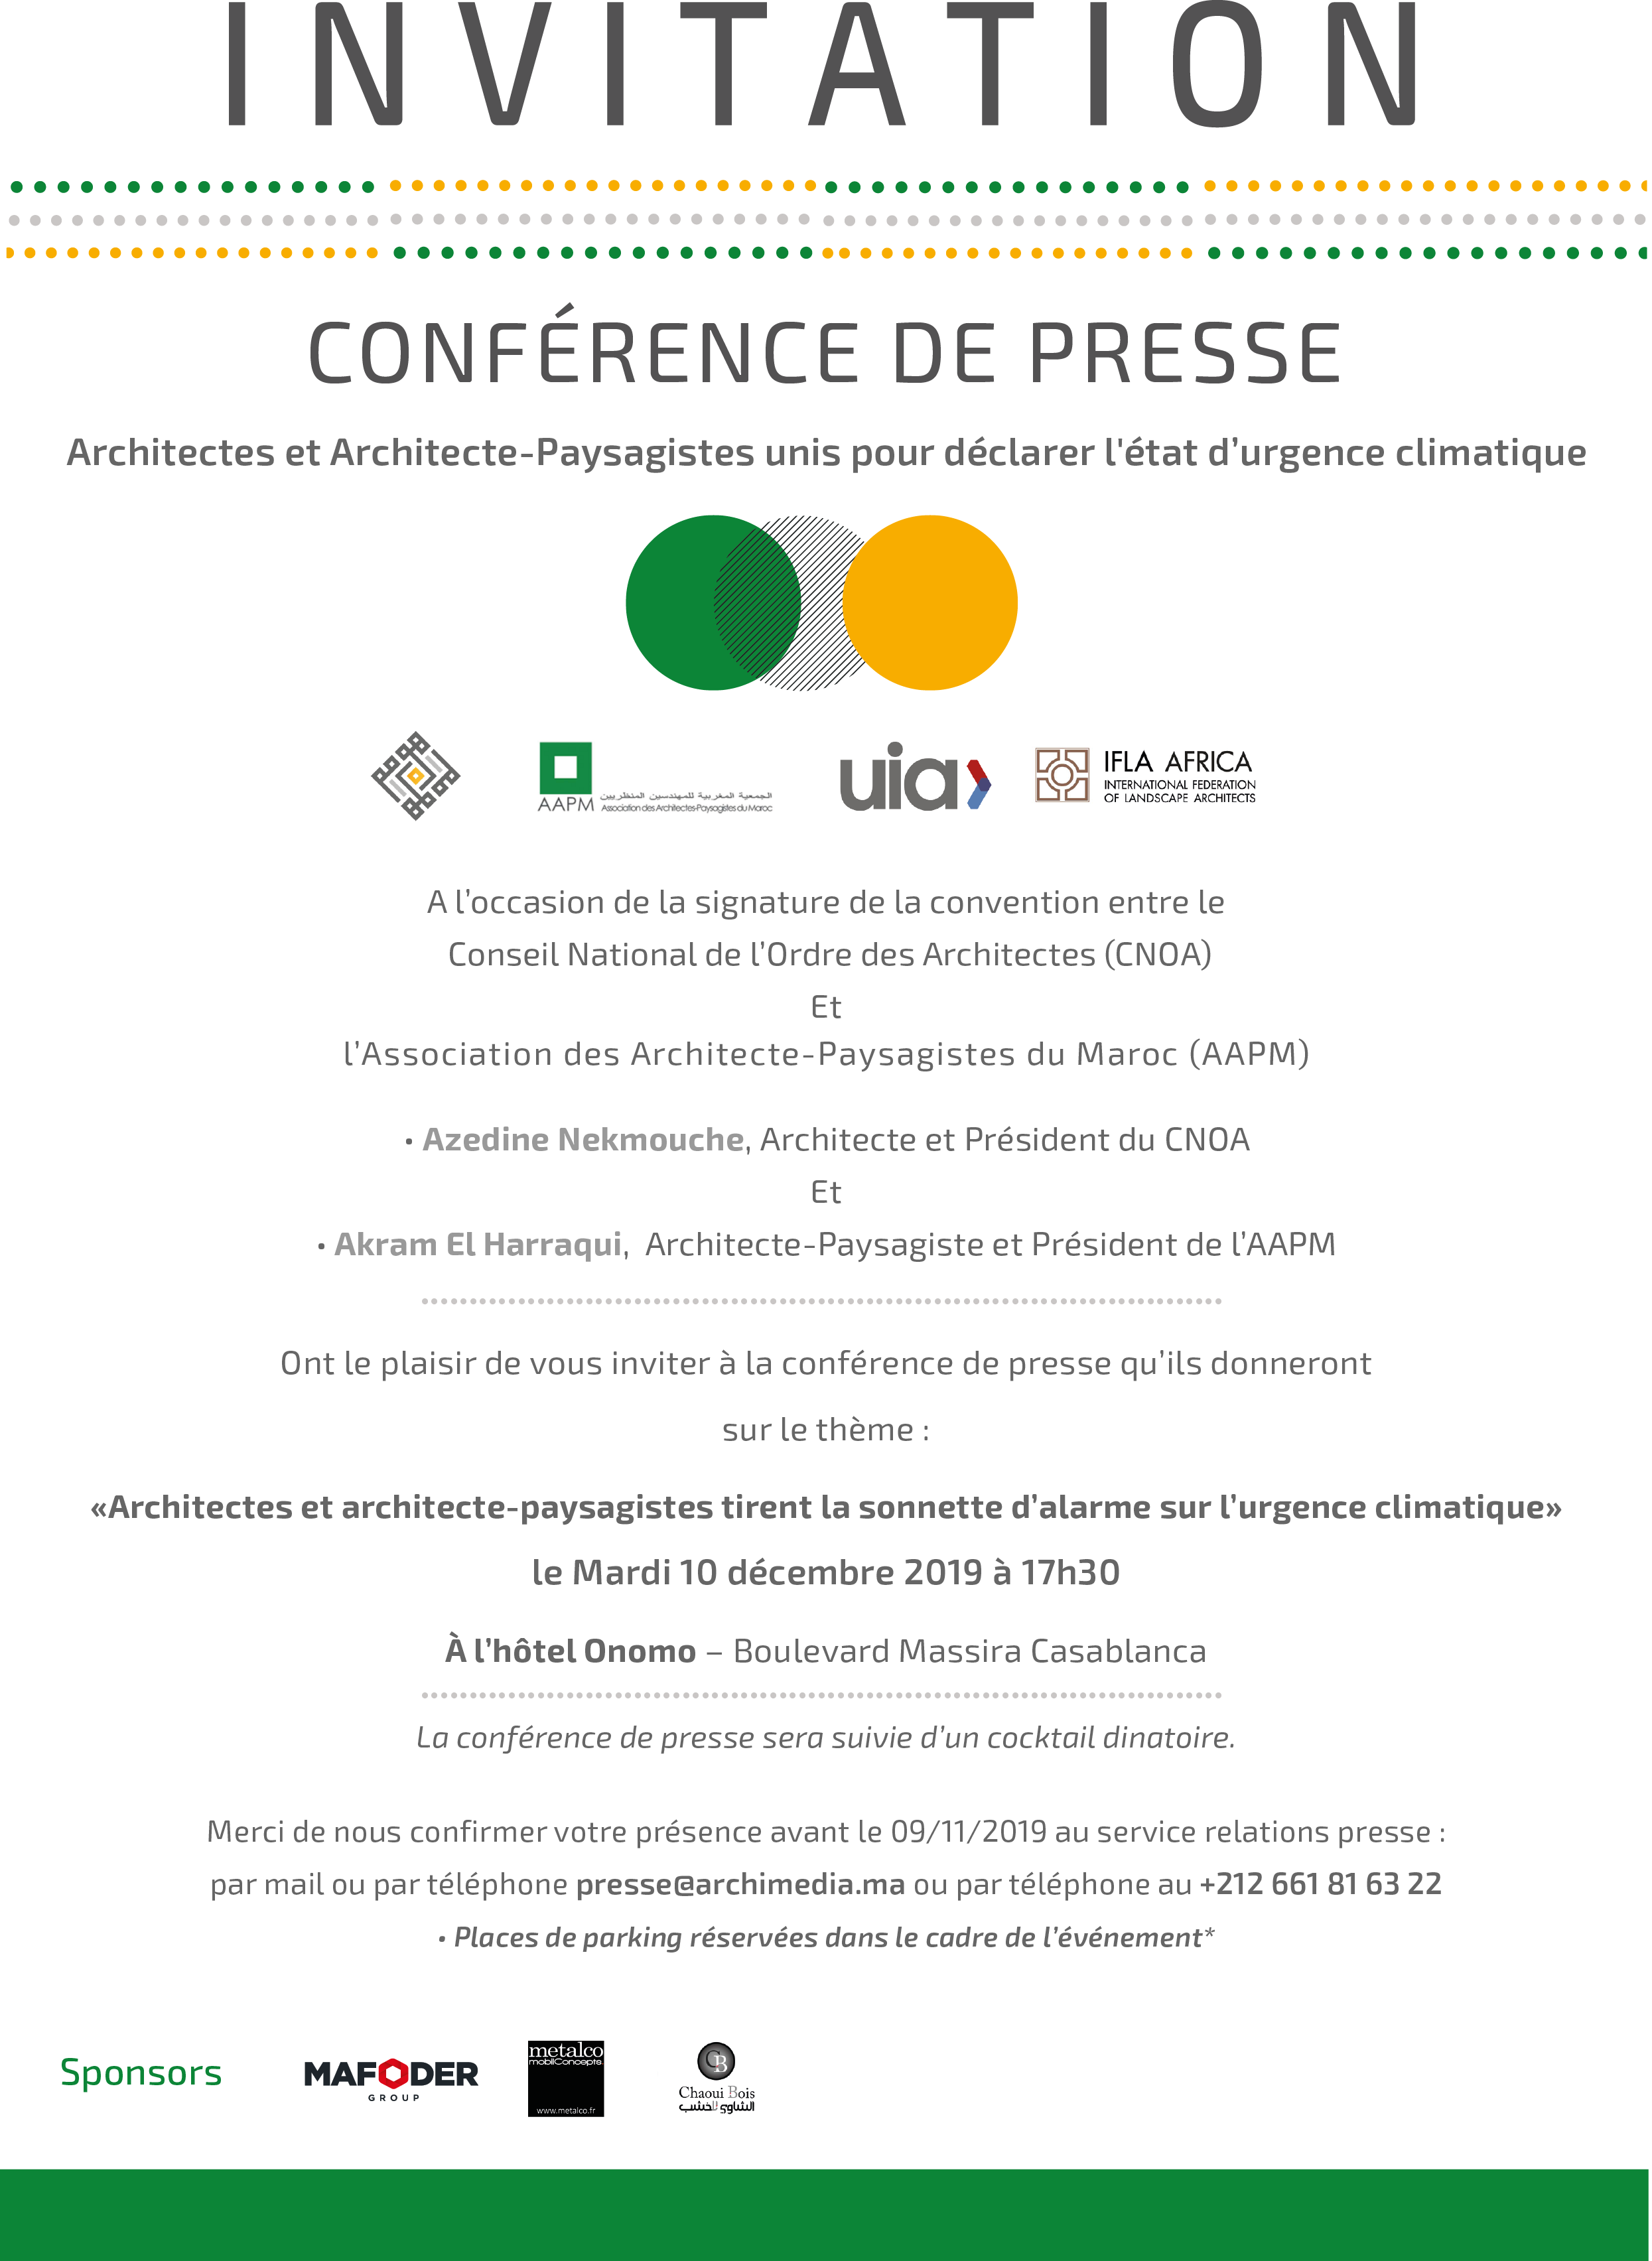 Conférence de presse pour convention Architectes – Architecte-paysagistes